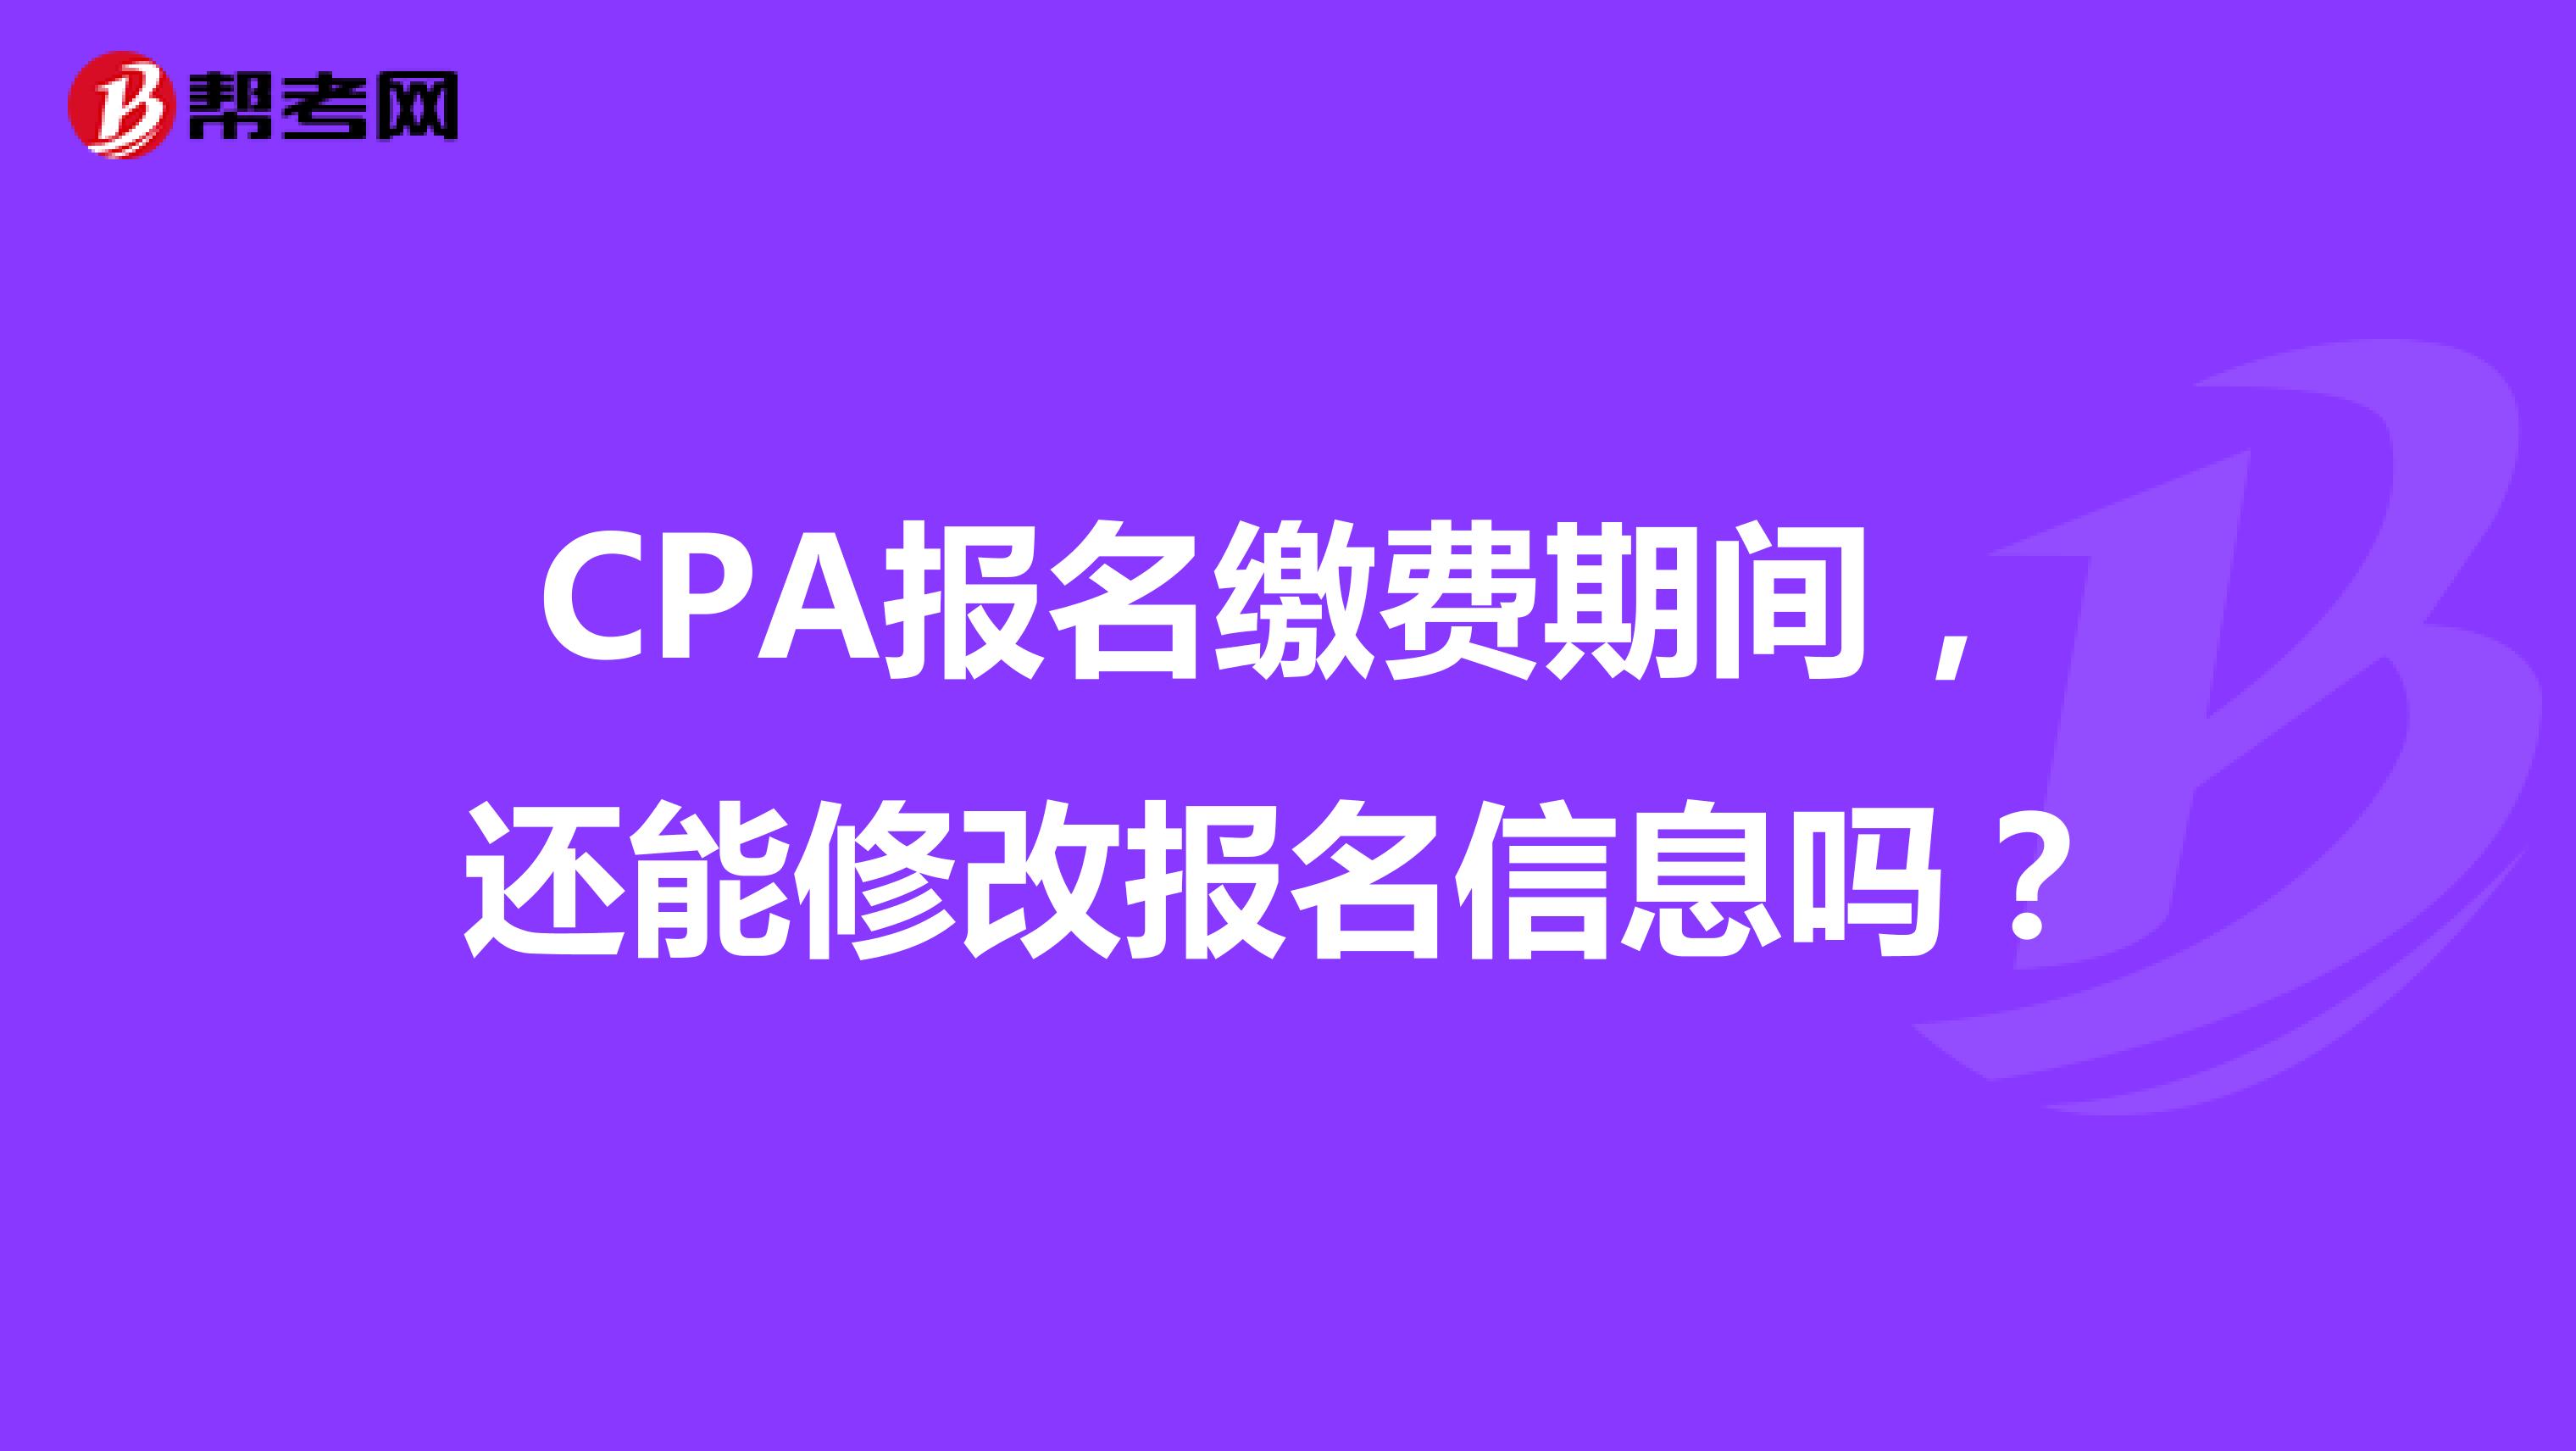 CPA报名缴费期间，还能修改报名信息吗？